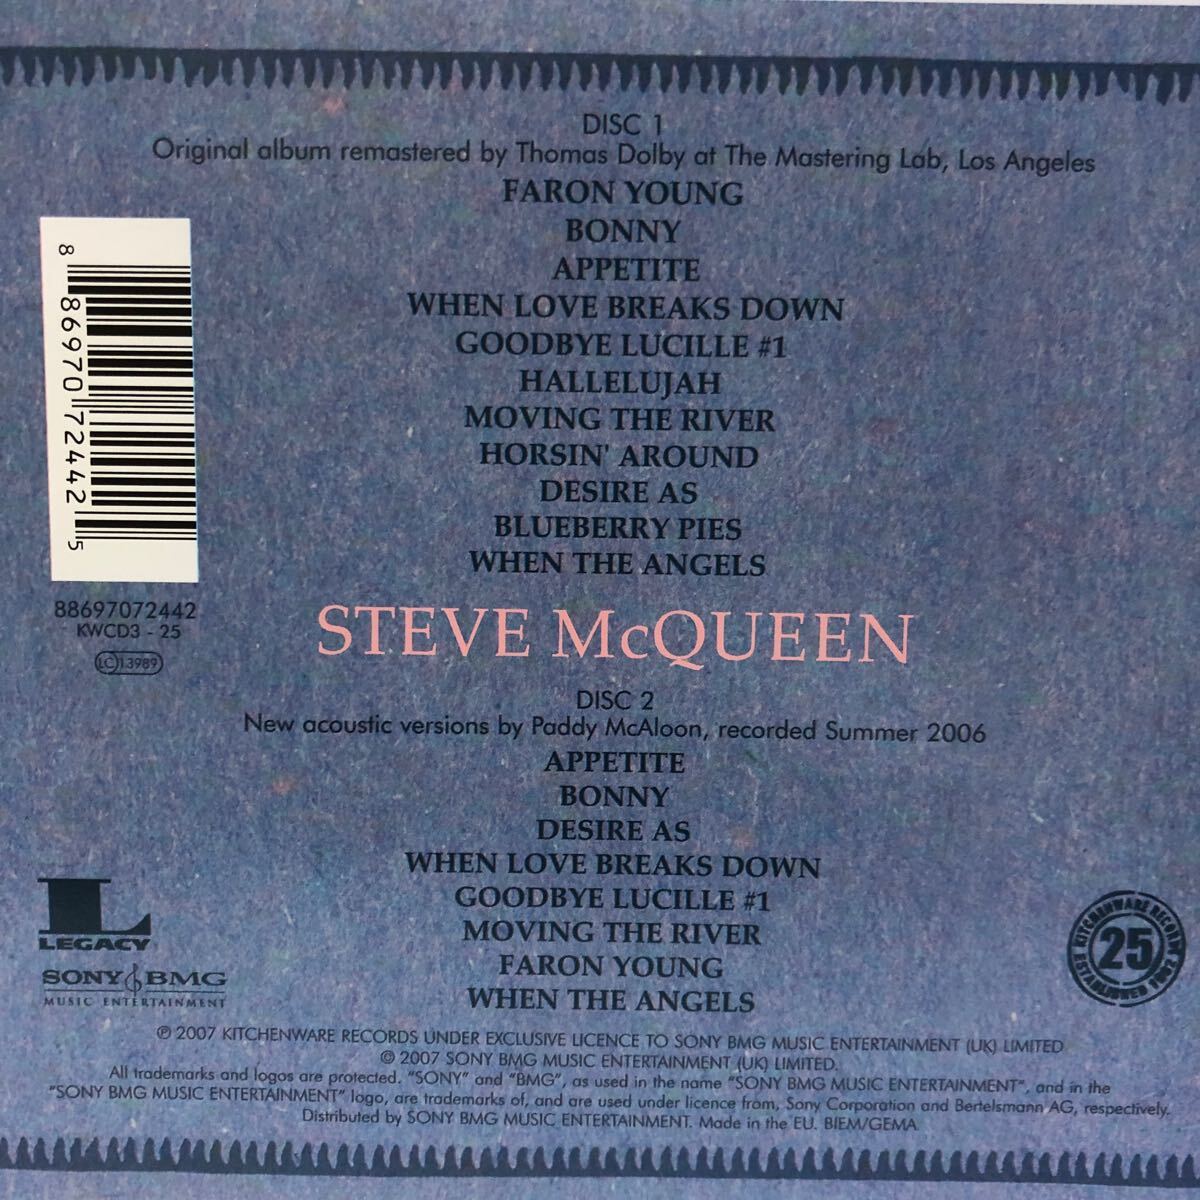 プリファブ・スプラウト 3アルバム 5CD prefab sprout / steve mcqueen 2CD輸入盤、38カラット・コレクション 2CD国内盤、swoon 1CD輸入盤の画像7